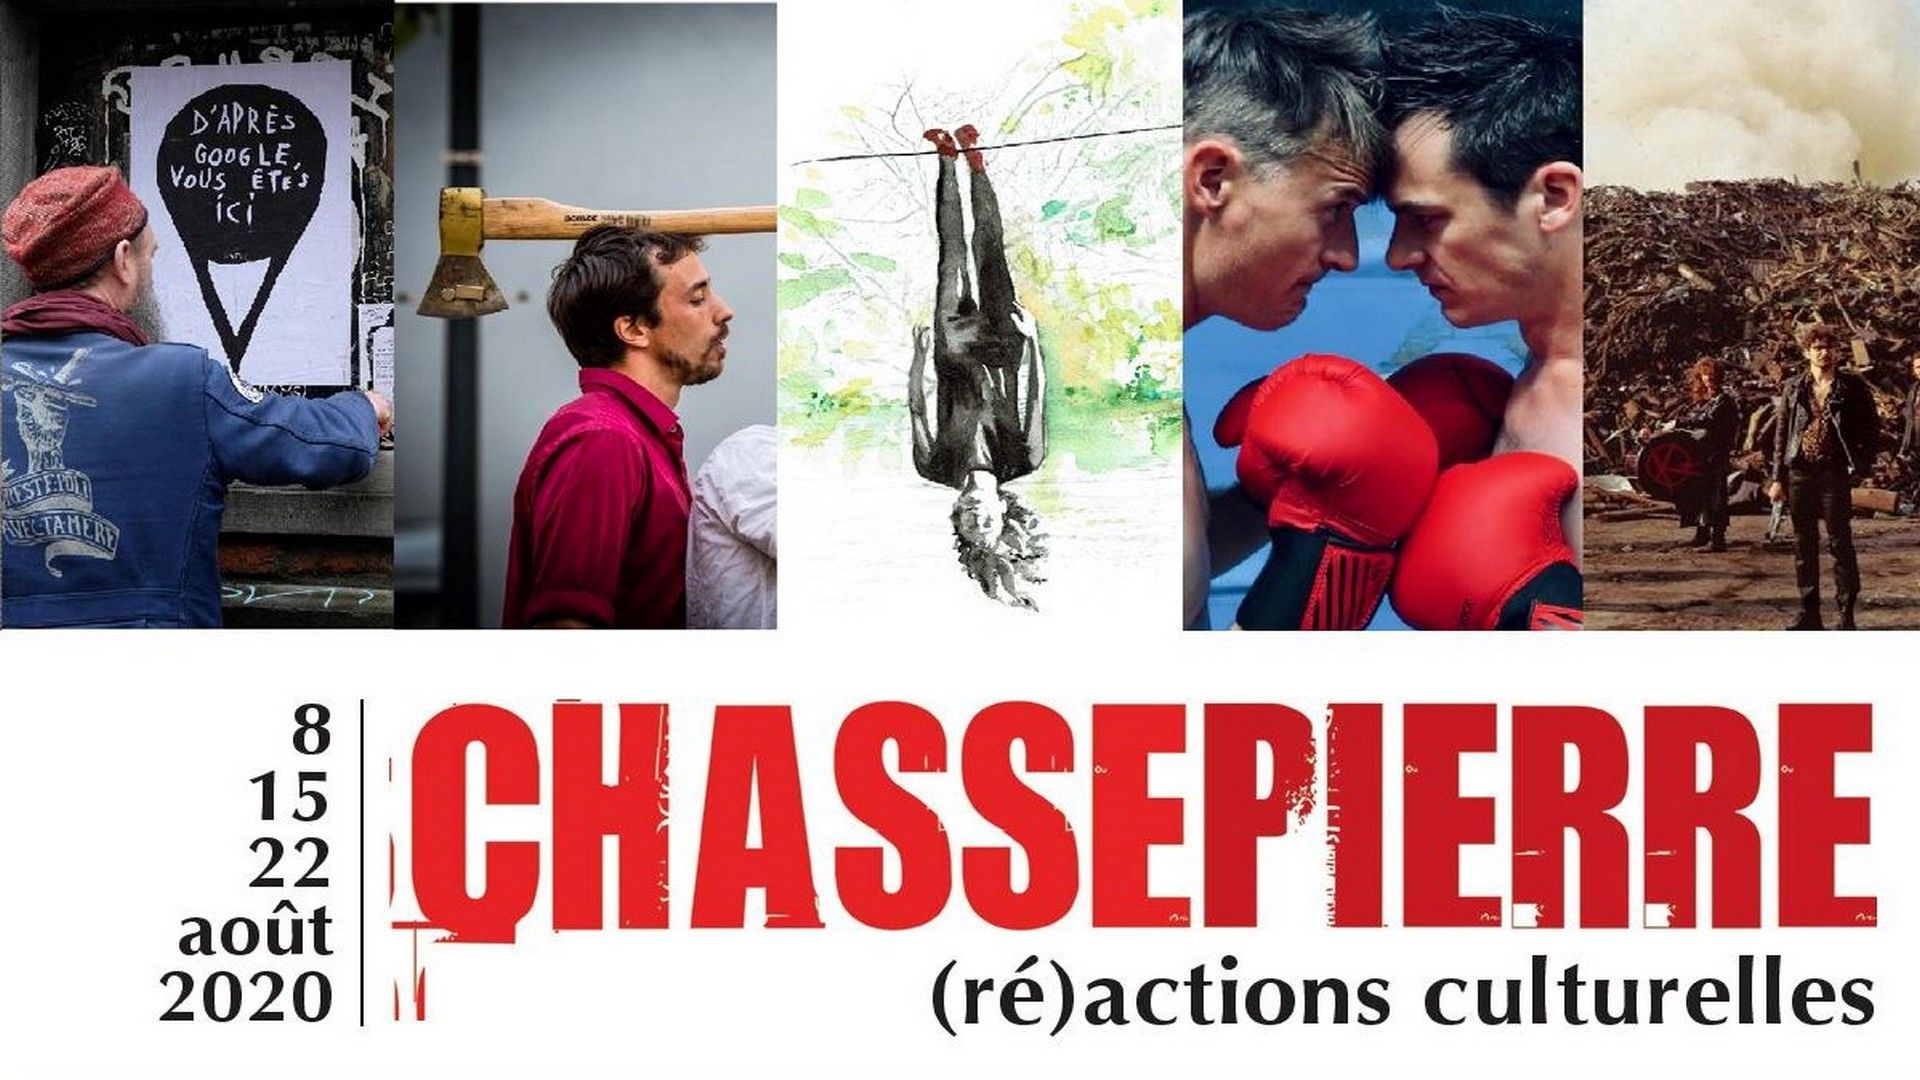 Le Festival de Chassepierre 2020 se décline en 3 week-ends symboliques